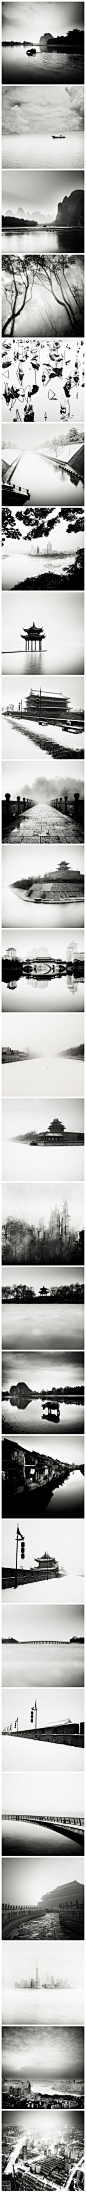 【水墨中国】奥地利摄影师Josef Hoflehner游走于世界各地，喜欢将照片进行黑白处理或者大面积留白，这里是他拍摄中国的部分，浓郁的水墨风格。 



